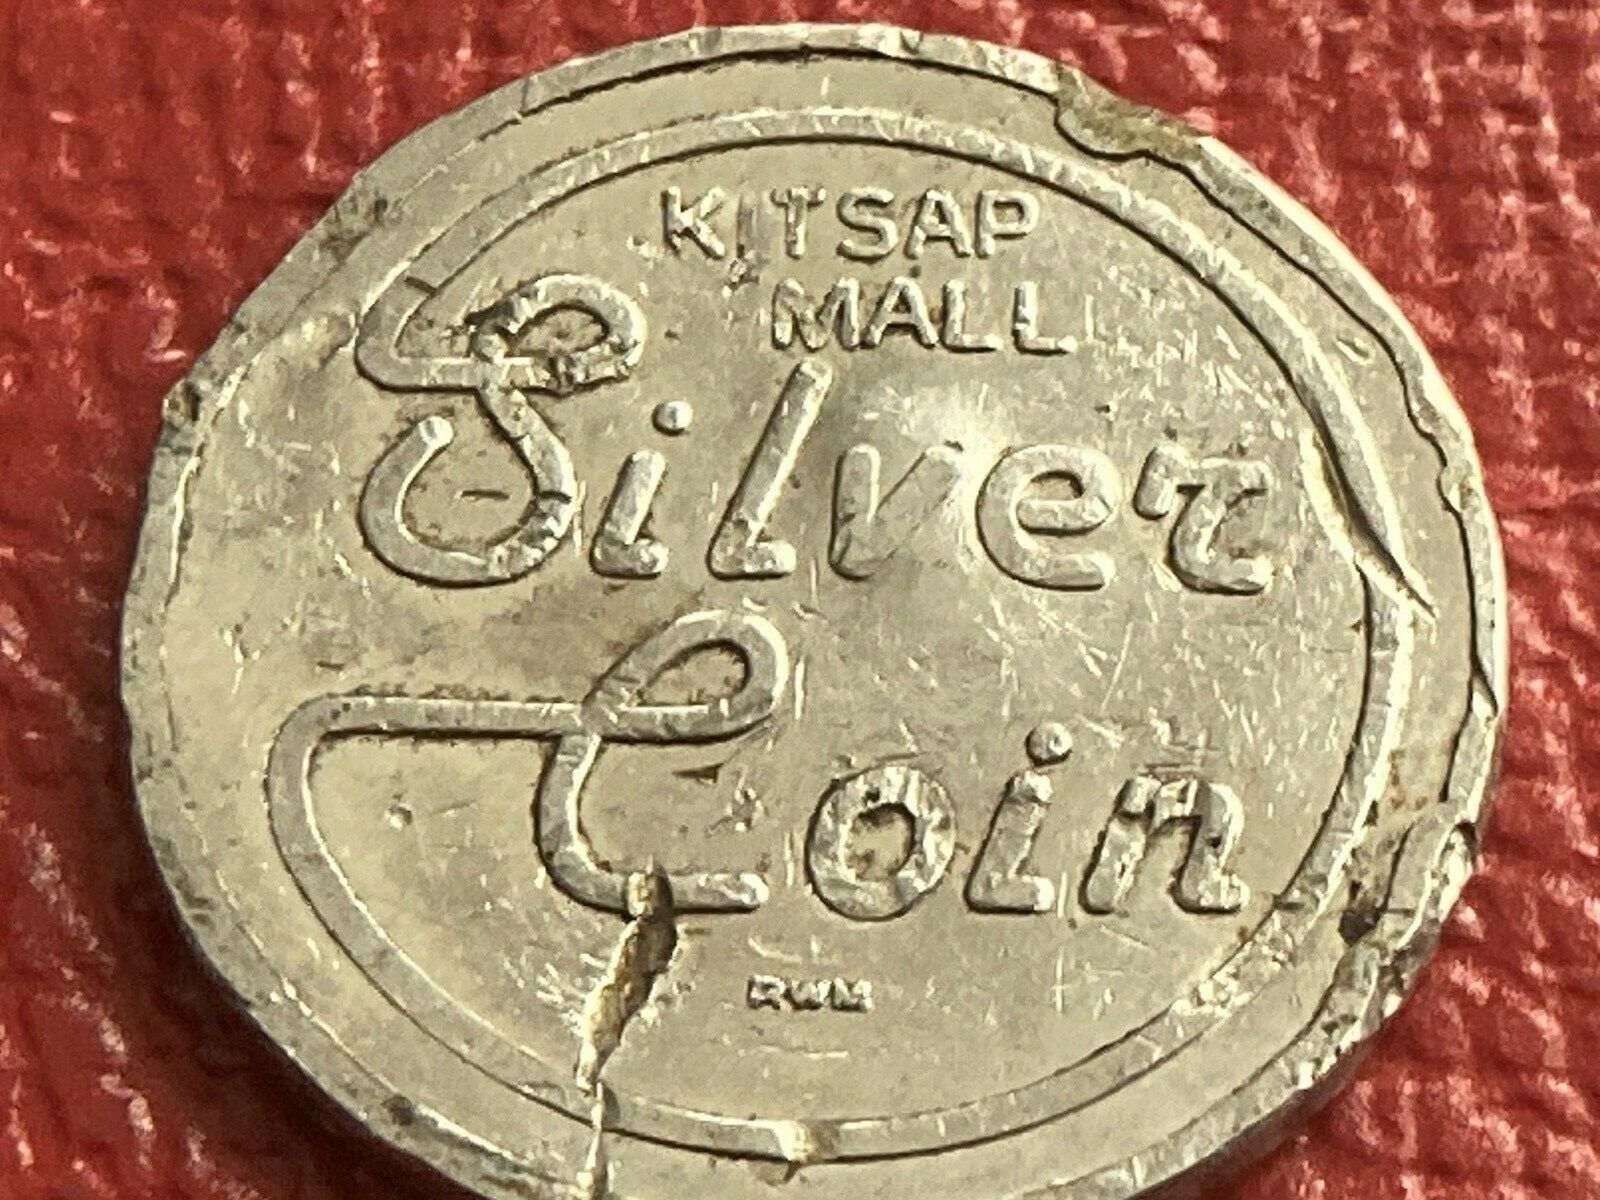 Vintage South Center Kitsap Mall Silver Silverdale Washington Token Coin Rough